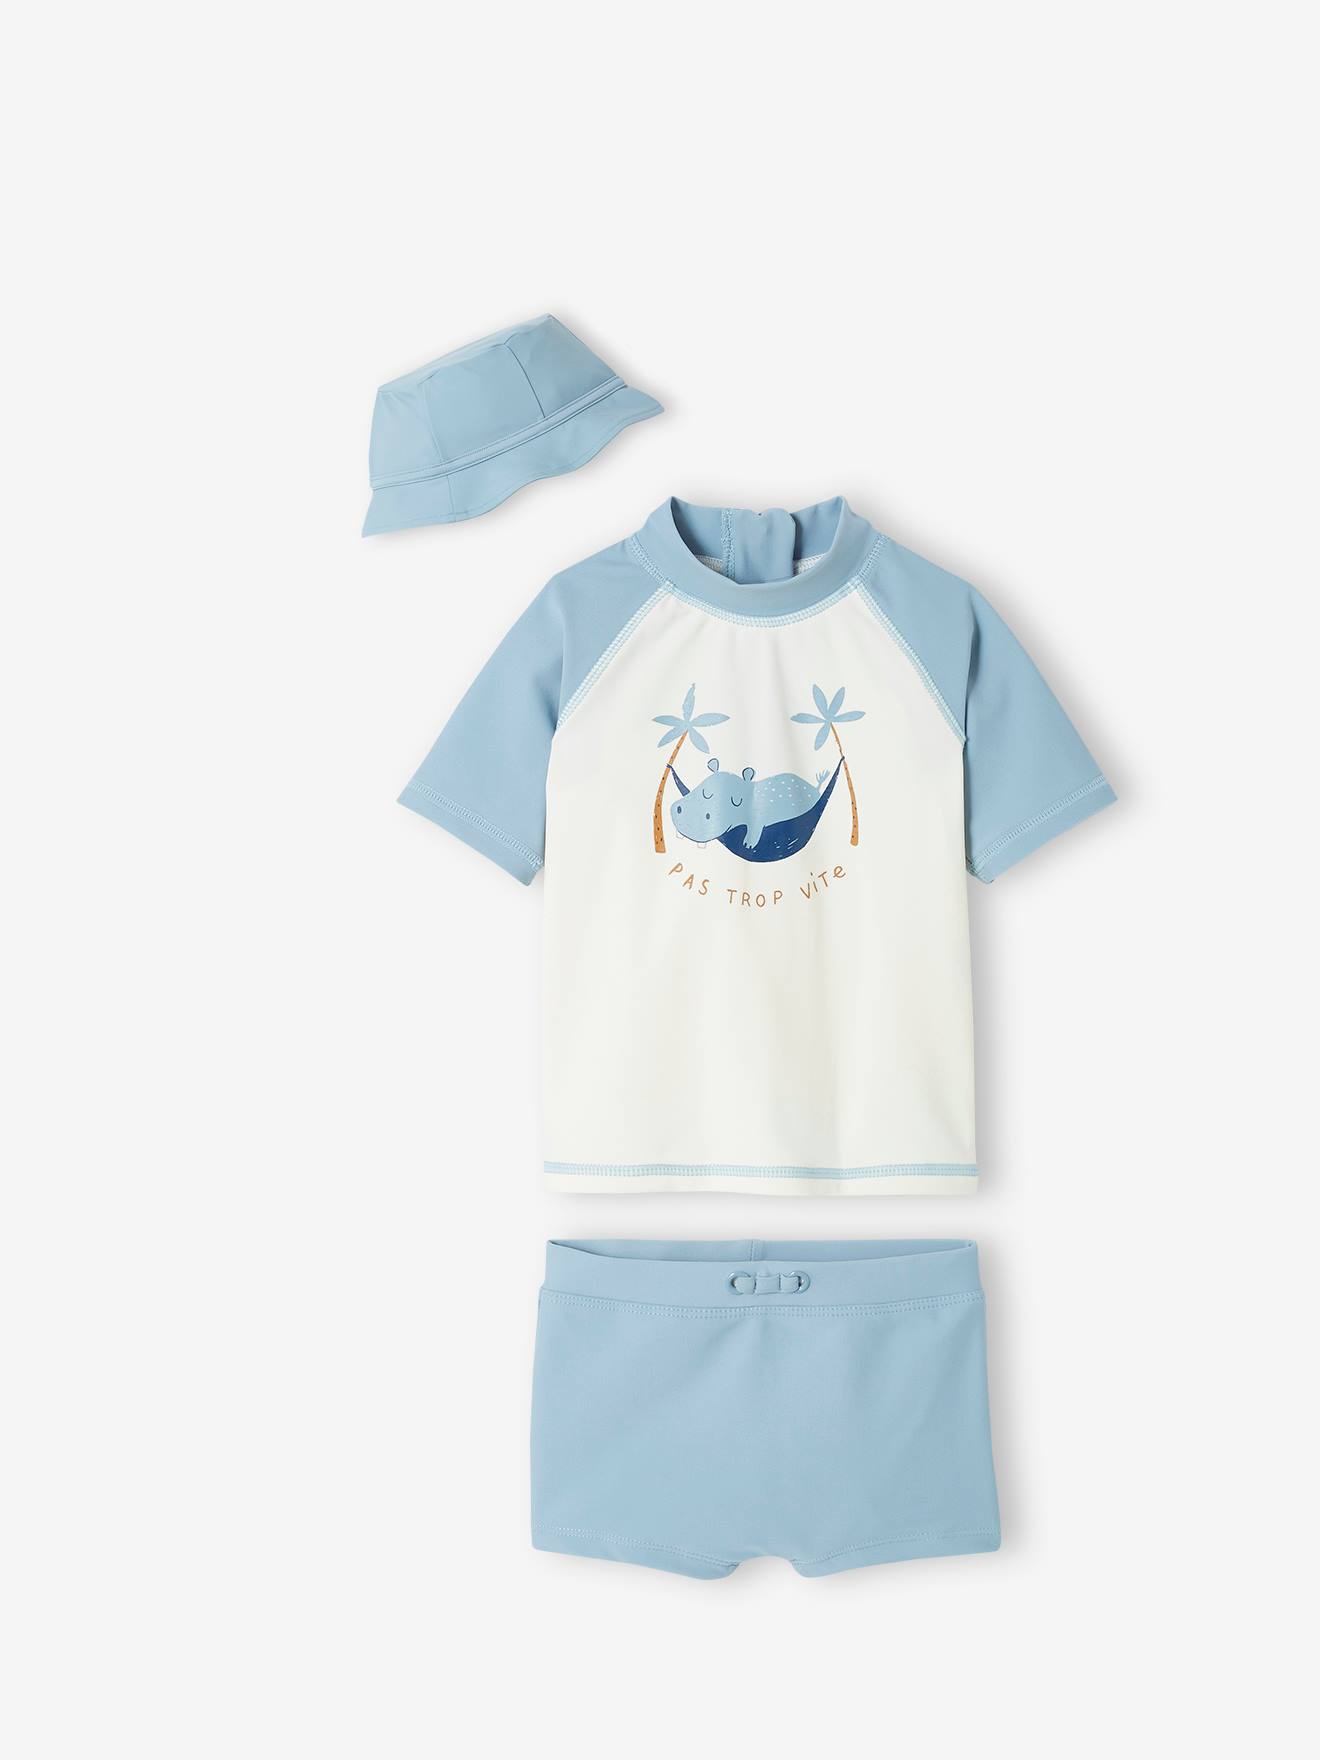 Zwemset met UV-bescherming voor jongensbaby T-shirt + boxershort + hoedje met nijlpaardprint blauwgroen